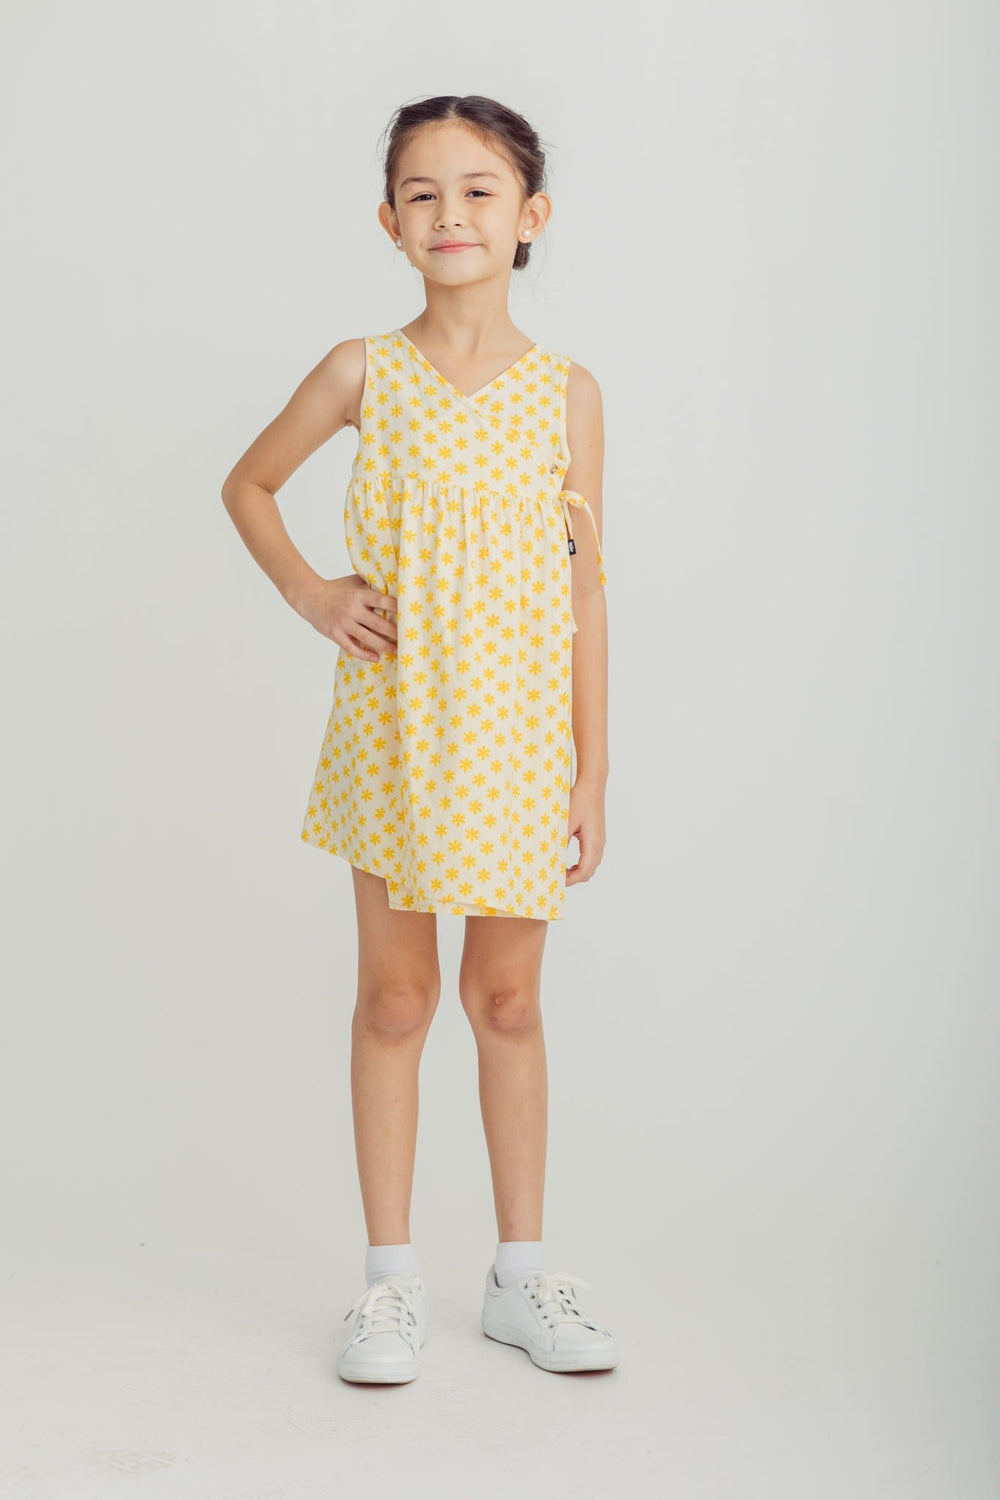 Yellow Wrap Around Printed Dress Kids - Mossimo PH